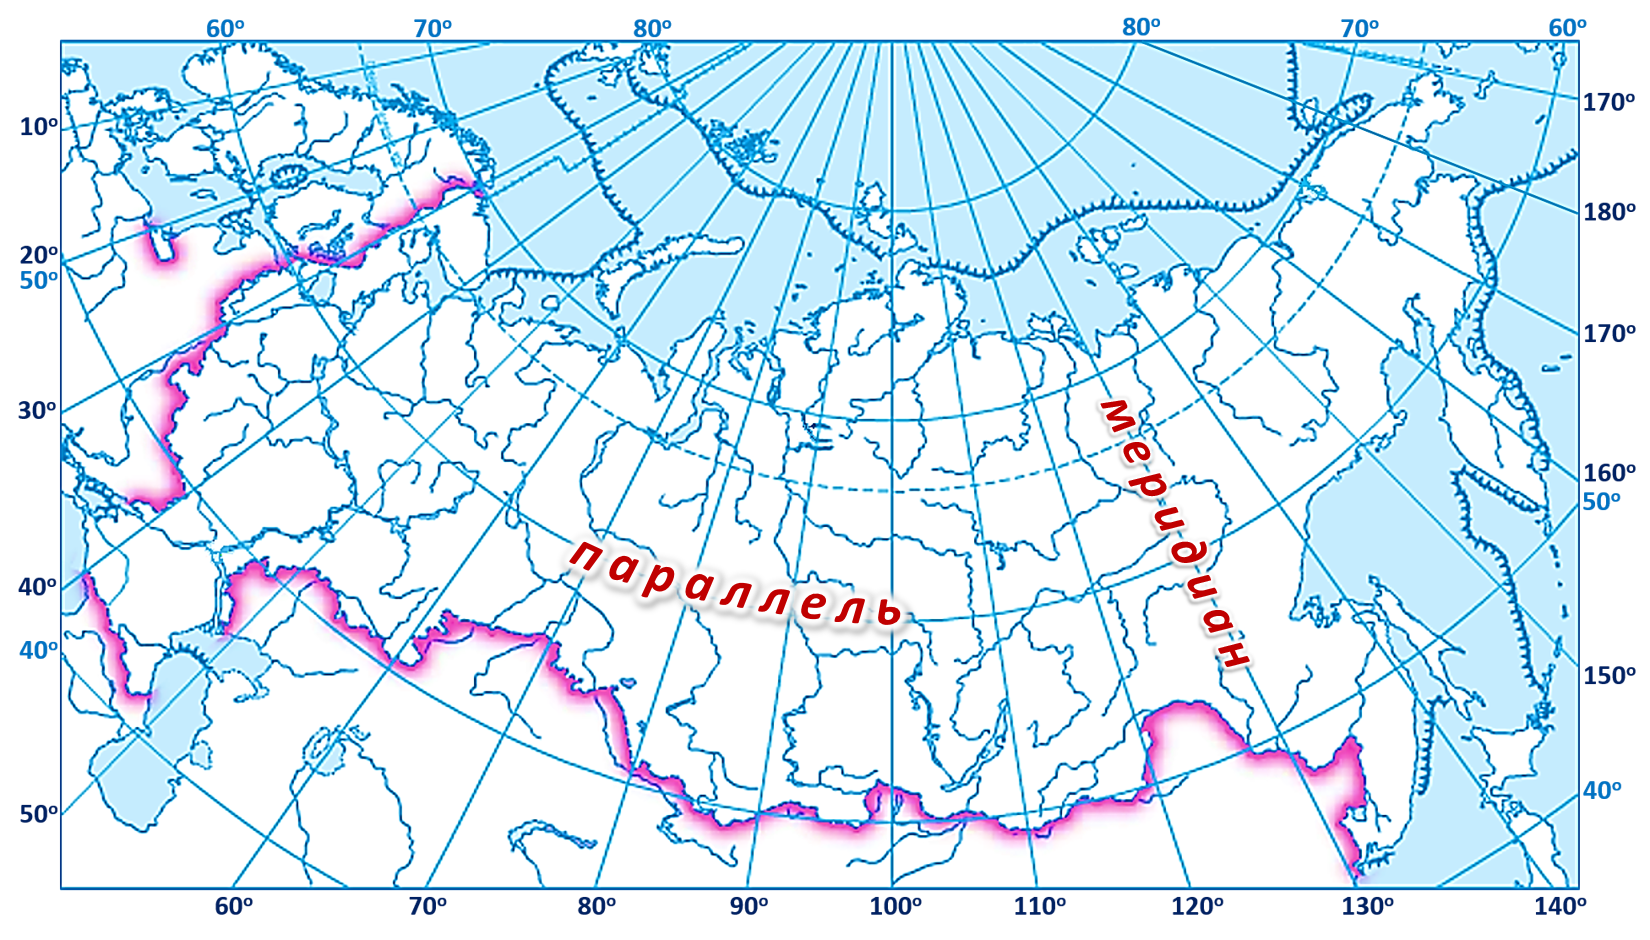 60 градус на карте. 60 Параллель 60 Меридиан на карте. Карта России с широтой и долготой и городами. Широта 60 градусов на карте России.